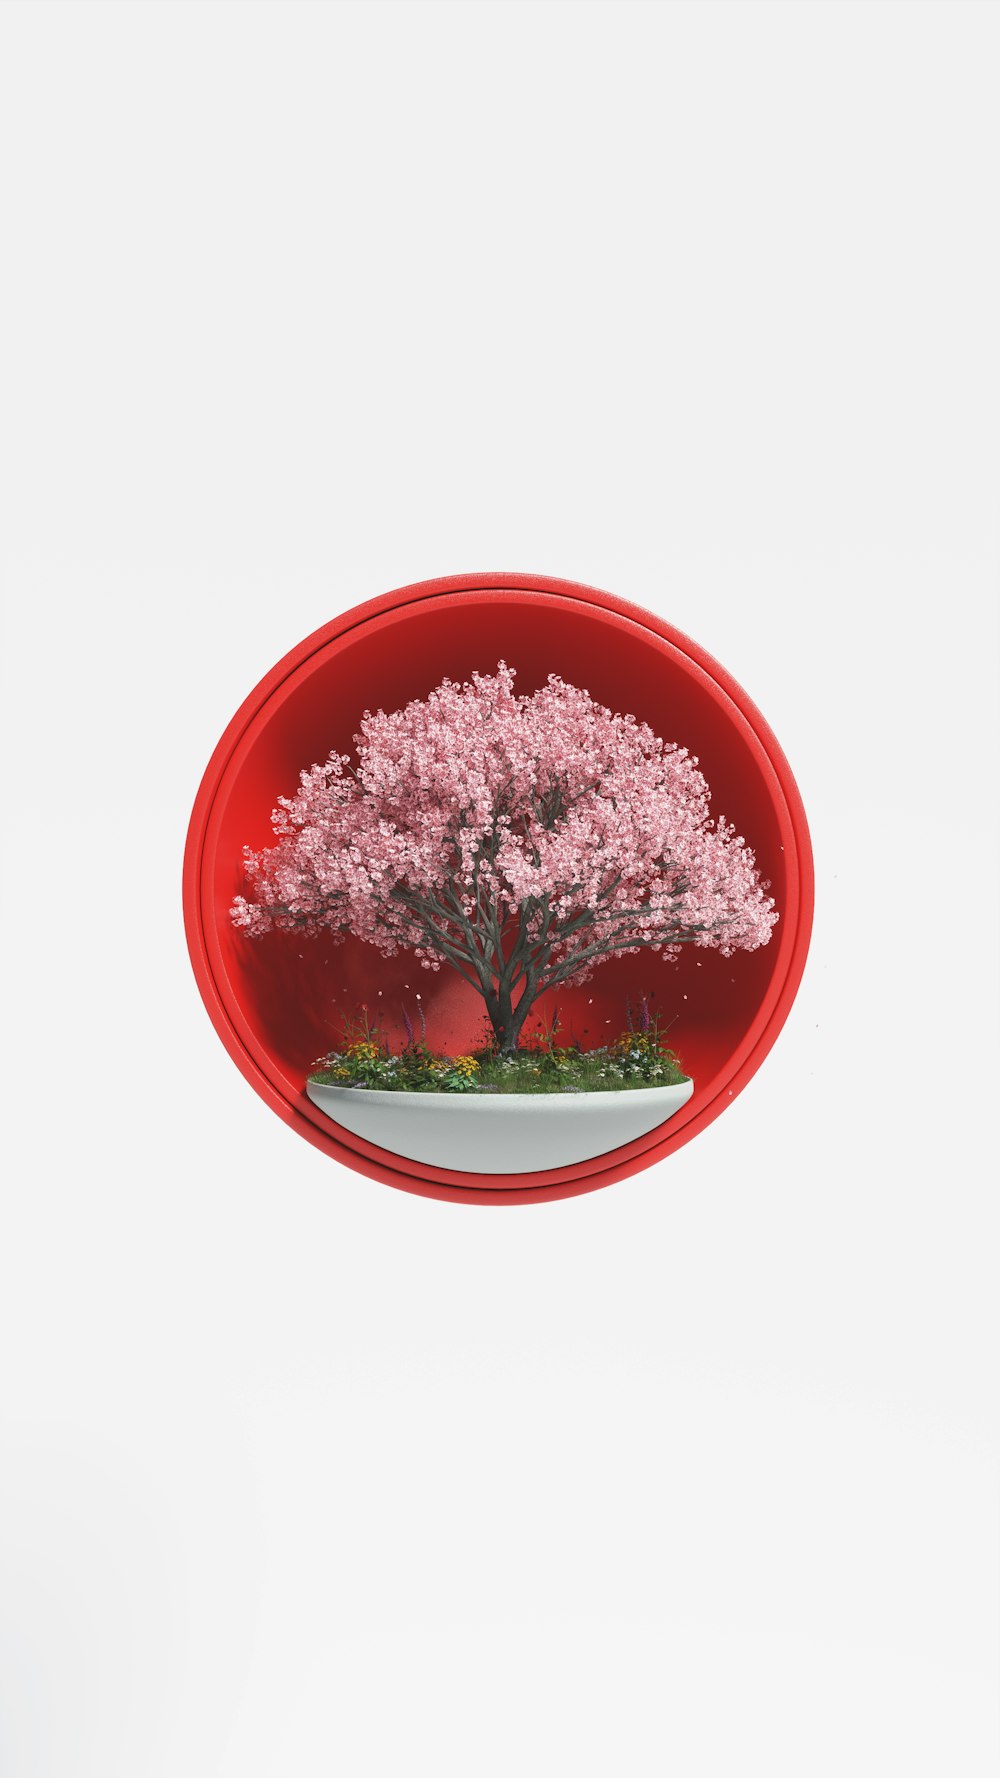 Ein Bonsaibaum in einer roten Schale auf weißem Hintergrund